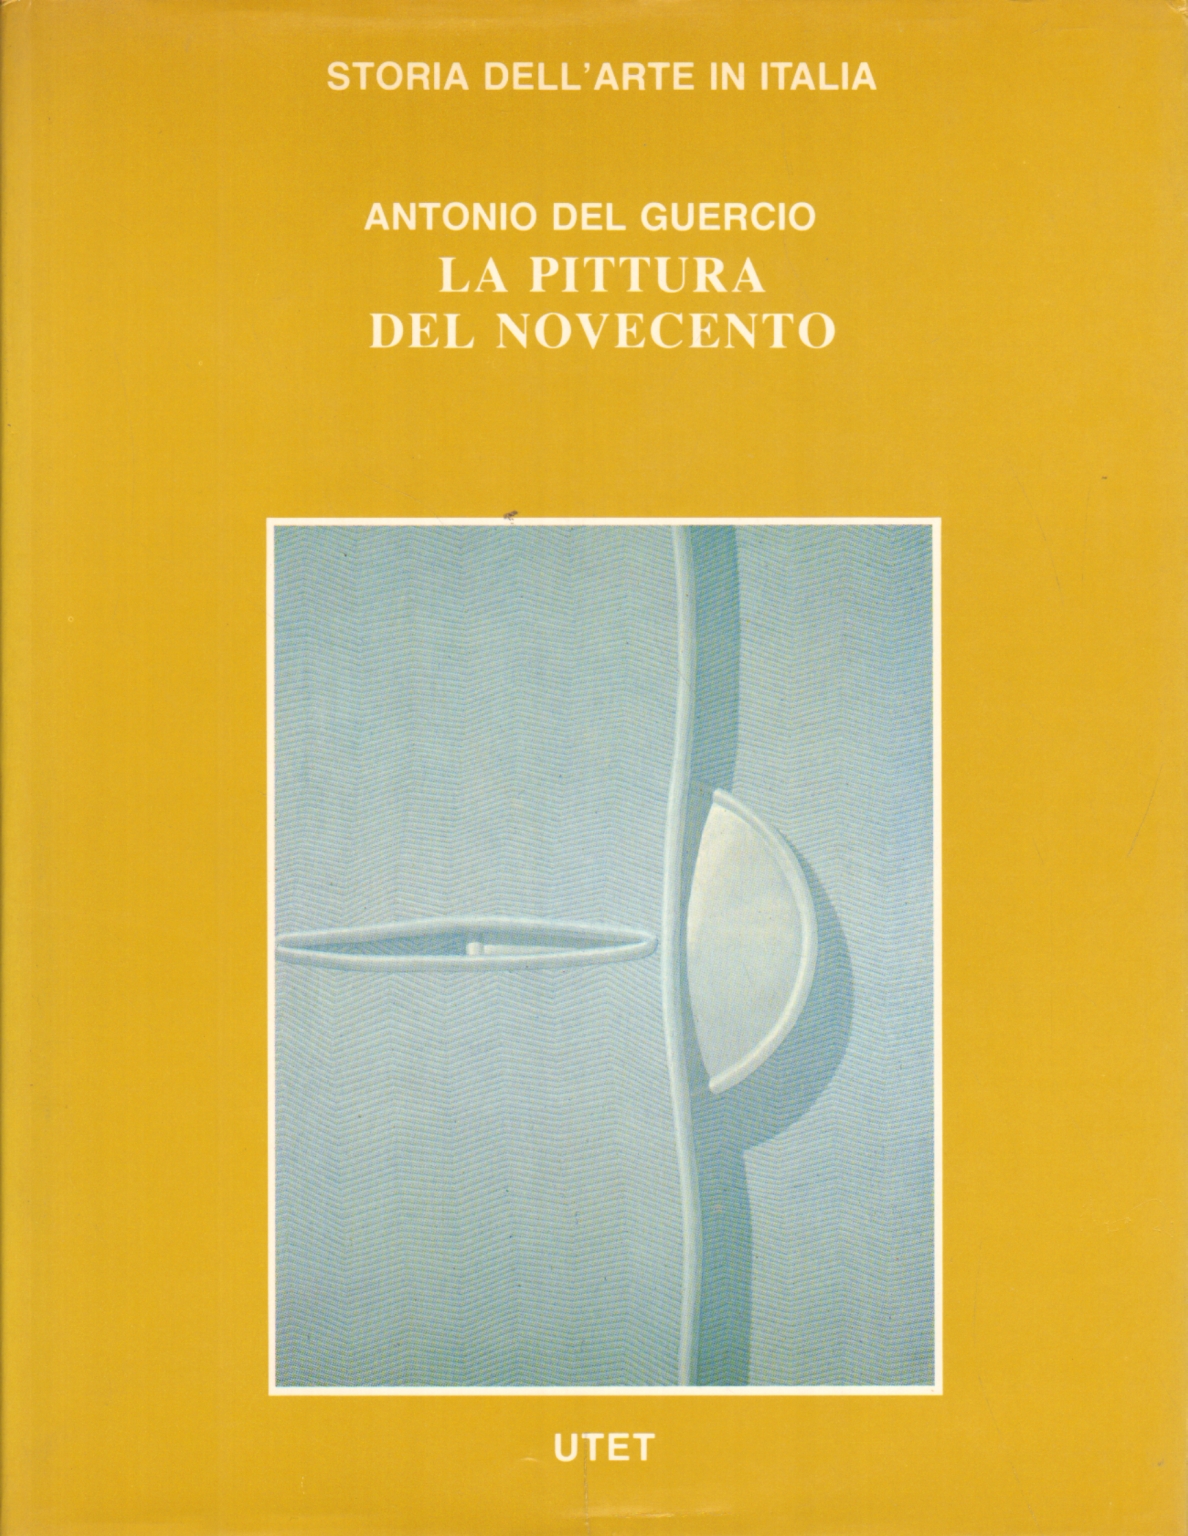 La pittura del Novecento, Antonio del Guercio